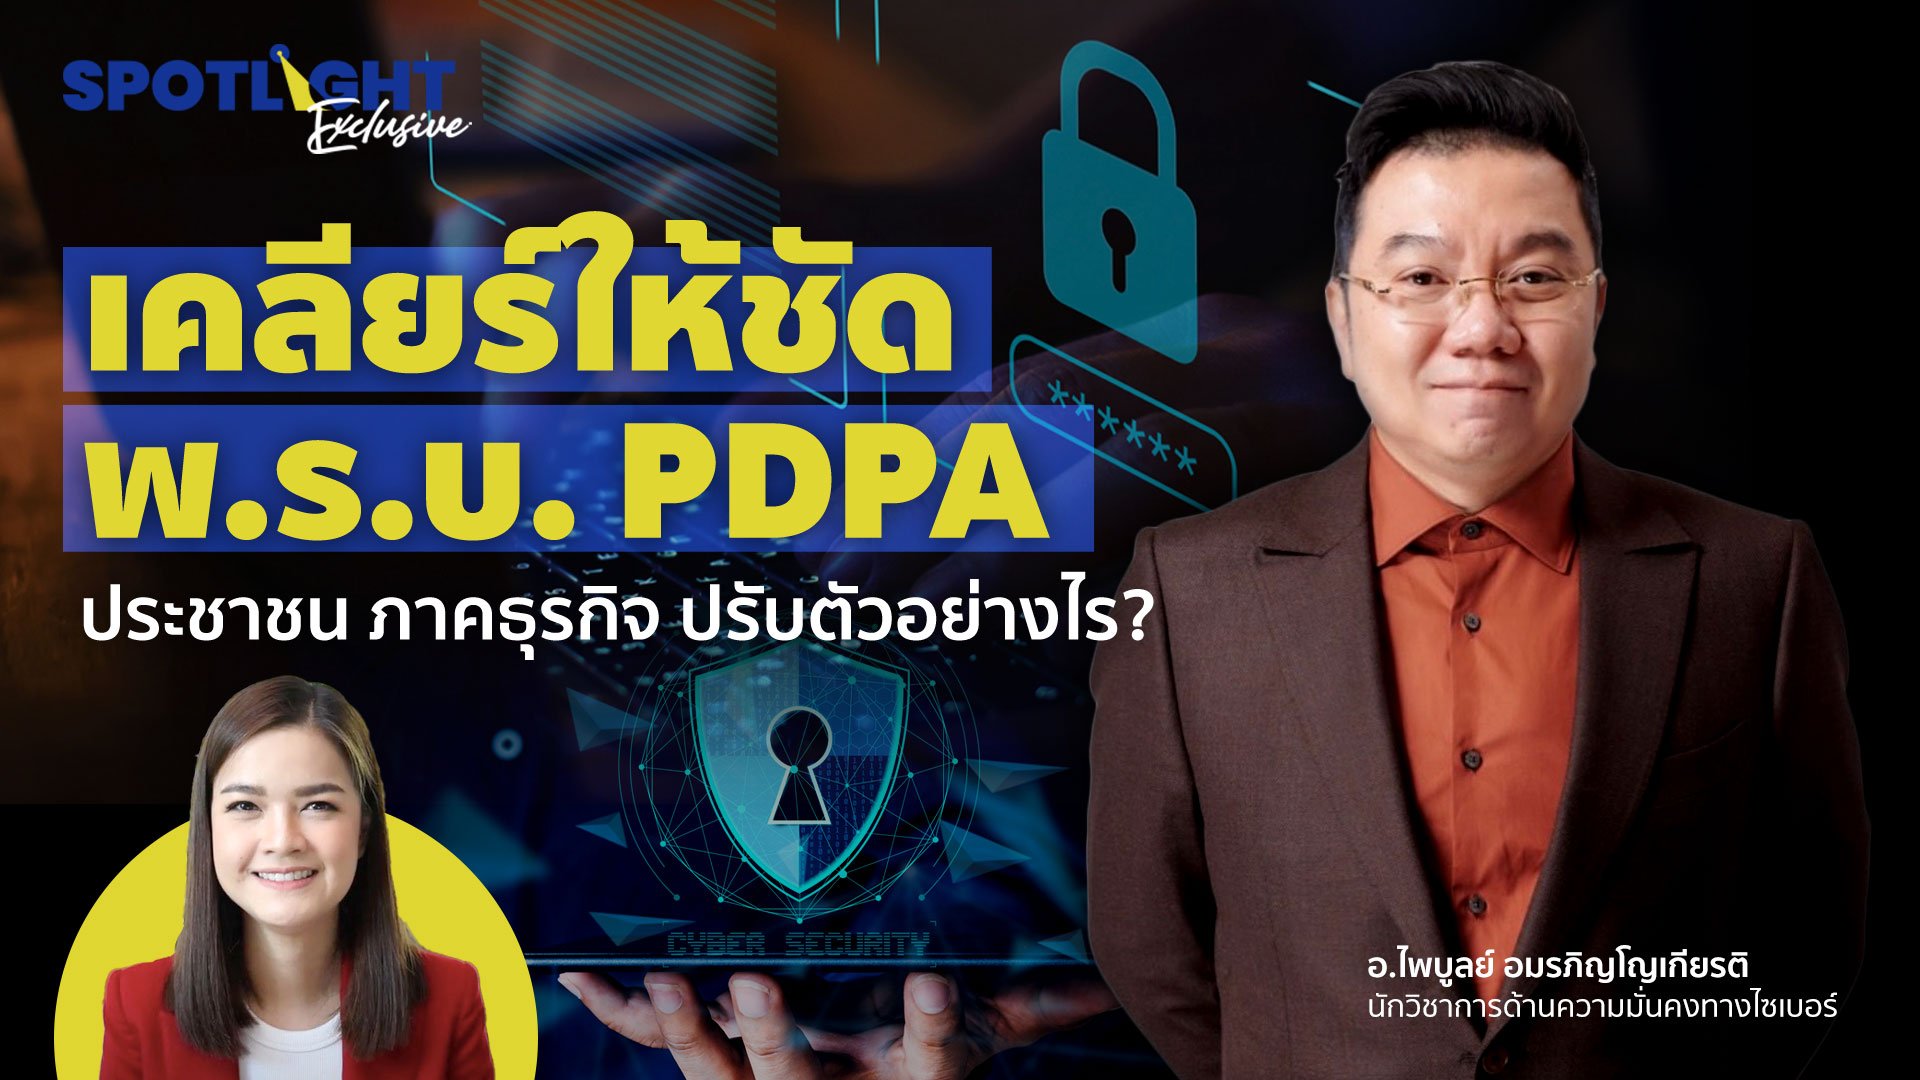 เคลียร์ให้ชัด พ.ร.บ. PDPA ประชาชน ภาคธุรกิจ ปรับตัวอย่างไร ?  | Spotlight | 14 มิ.ย. 65 | AMARIN TVHD34